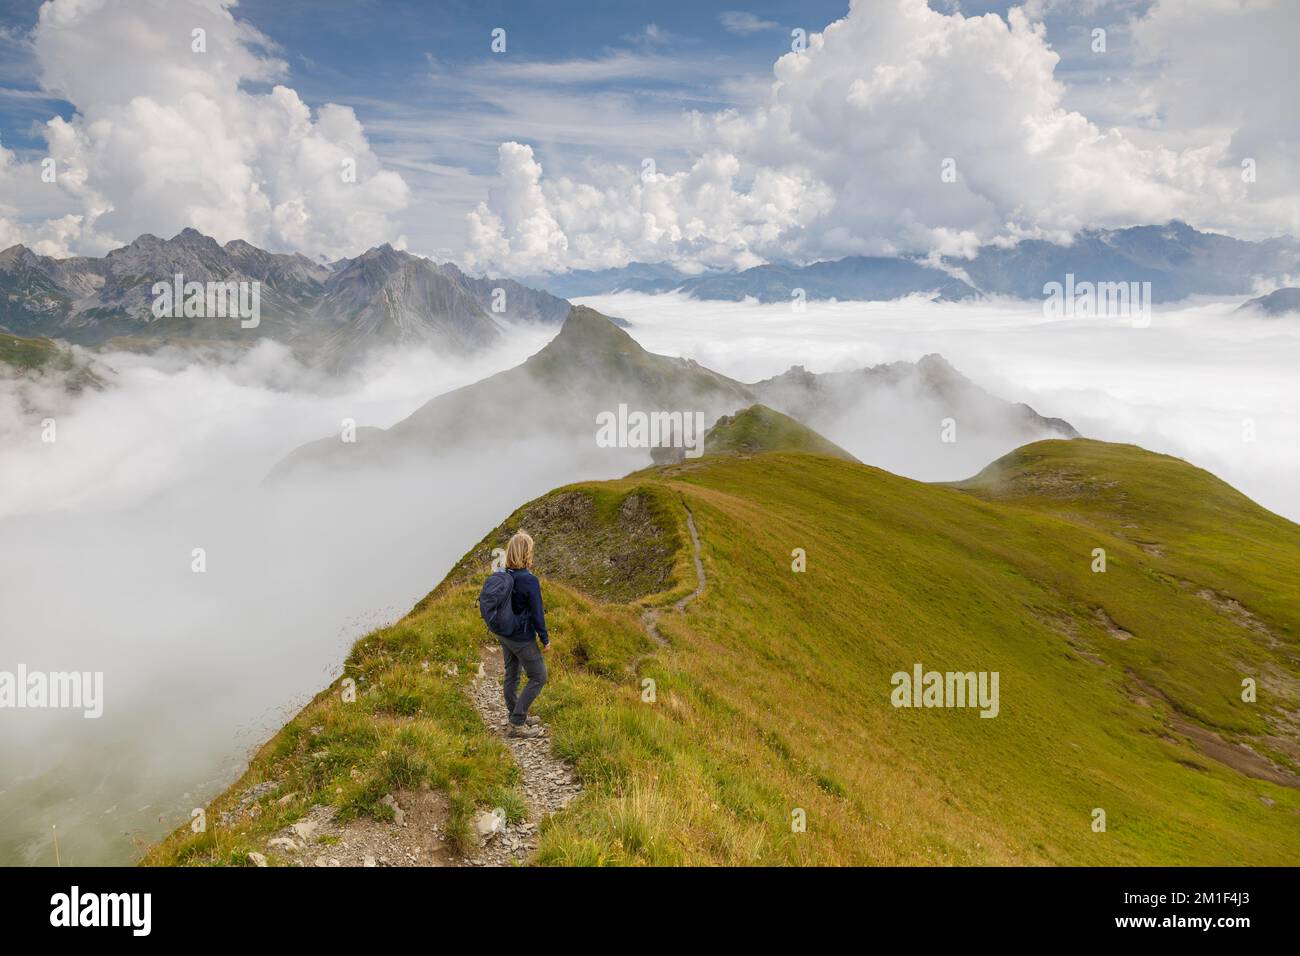 Un randonneur regarde les sommets des Alpes sur le Gehrengrat au-dessus des nuages, Lech, Autriche, Europe Banque D'Images